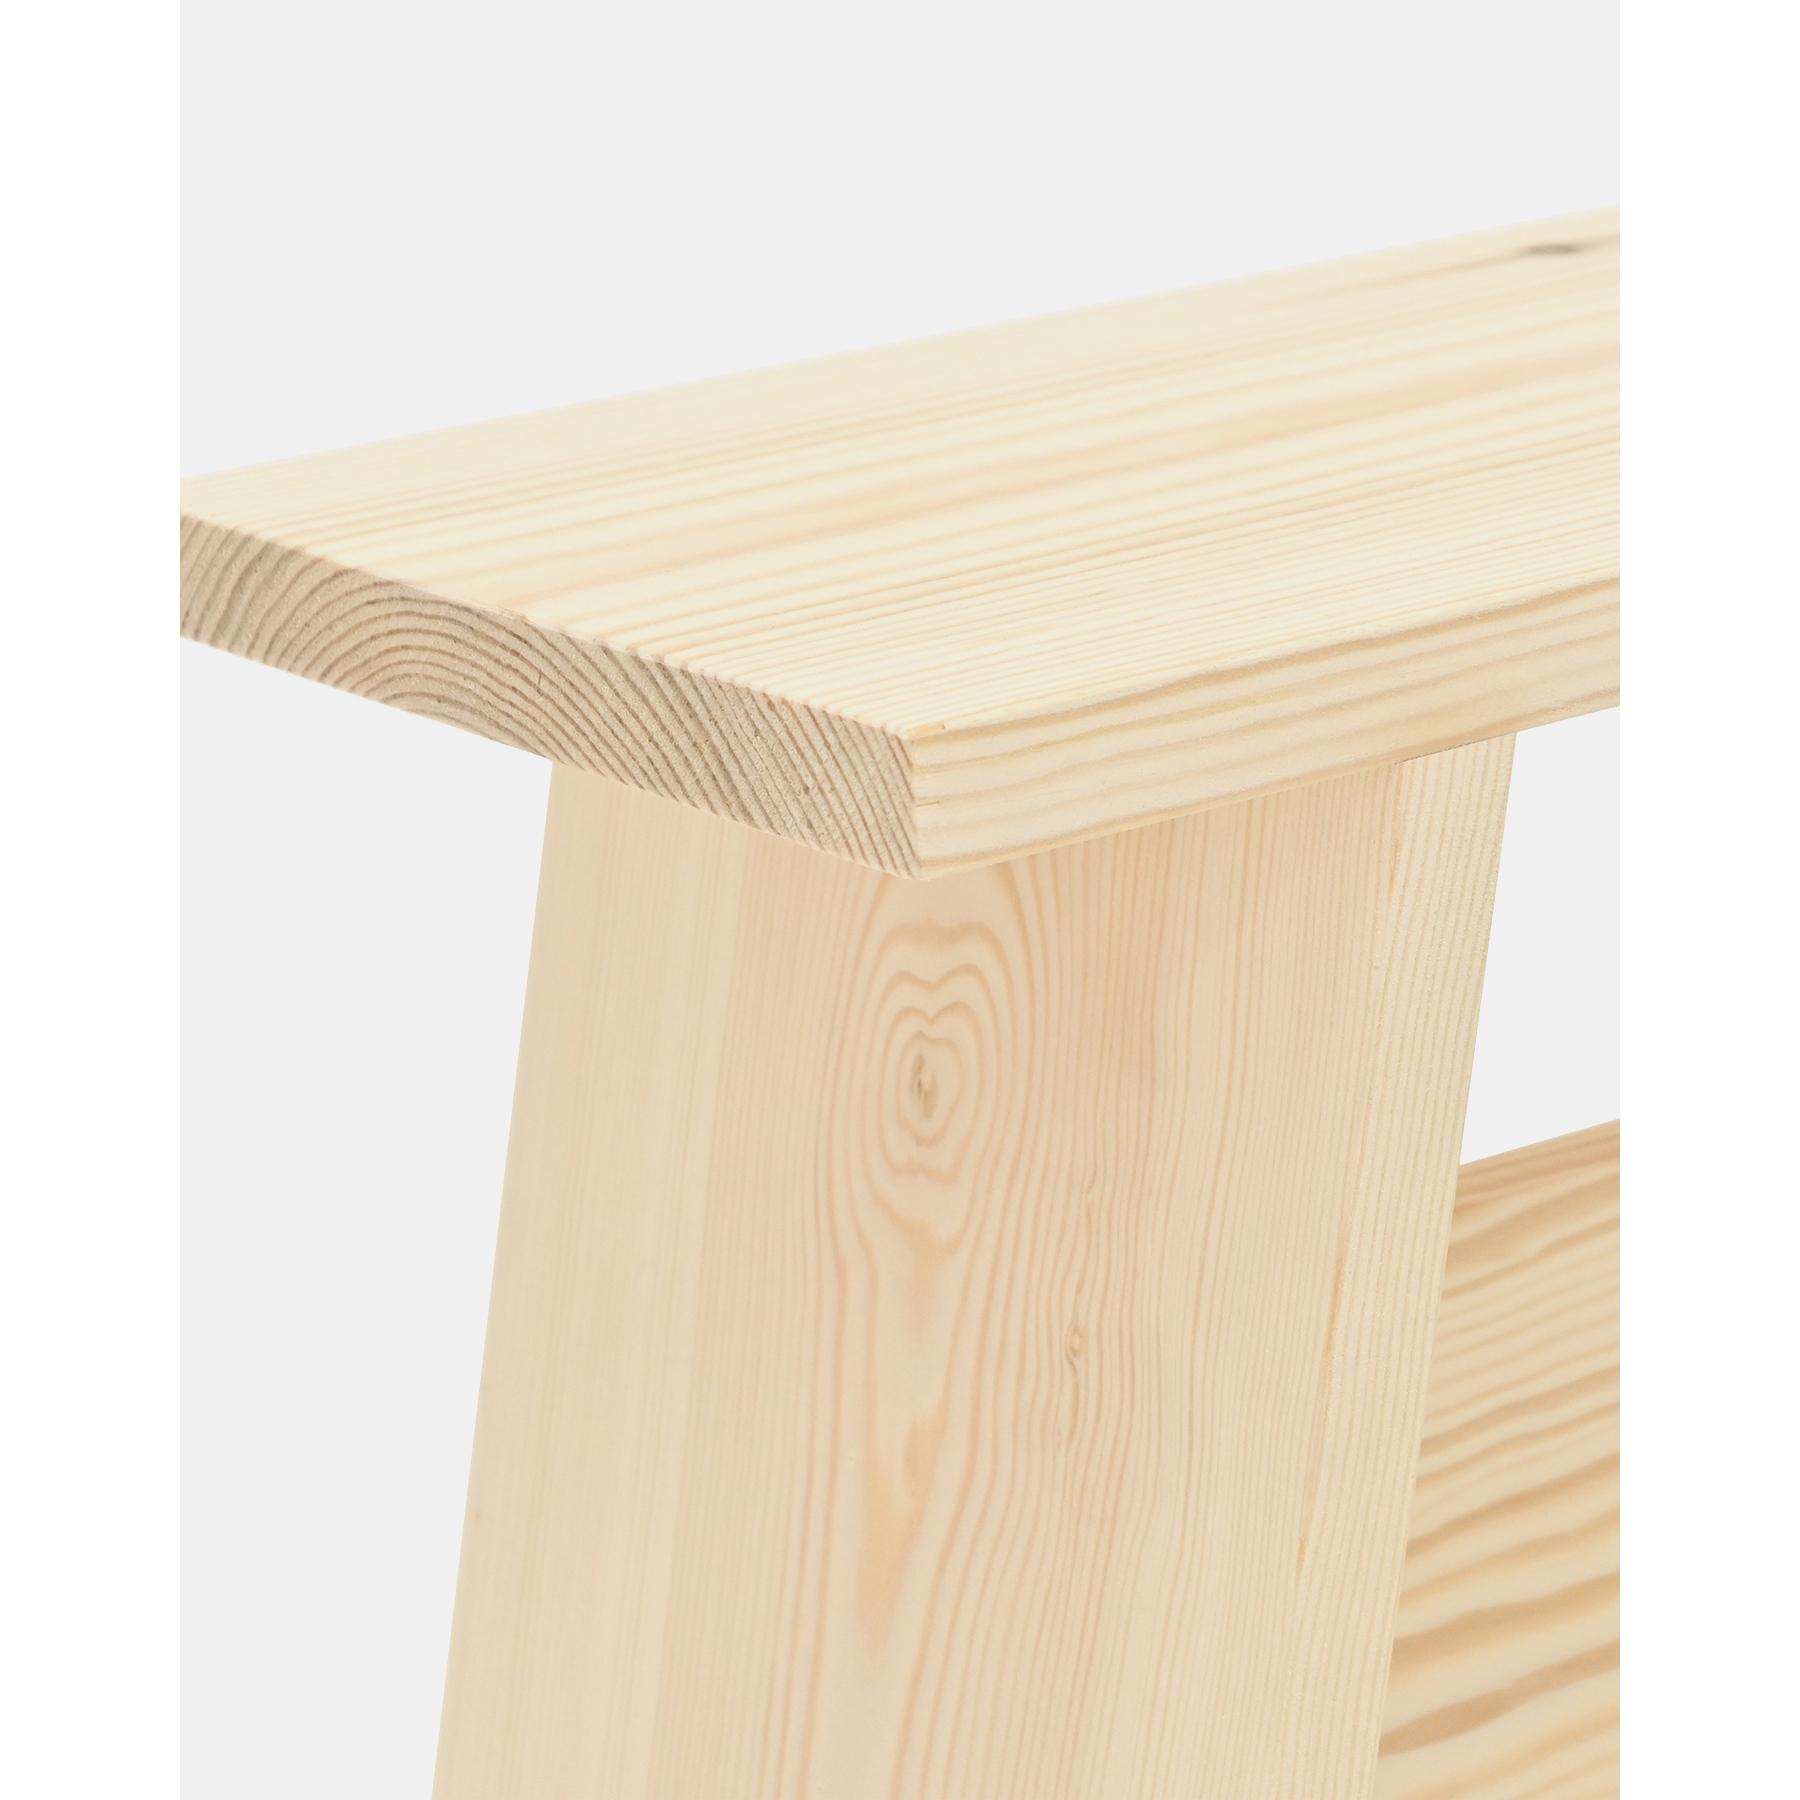 Table de chevet ou table d'appoint en bois massif 45x39cm ton naturel Hauteur: 45 Longueur: 39 Largeur: 25